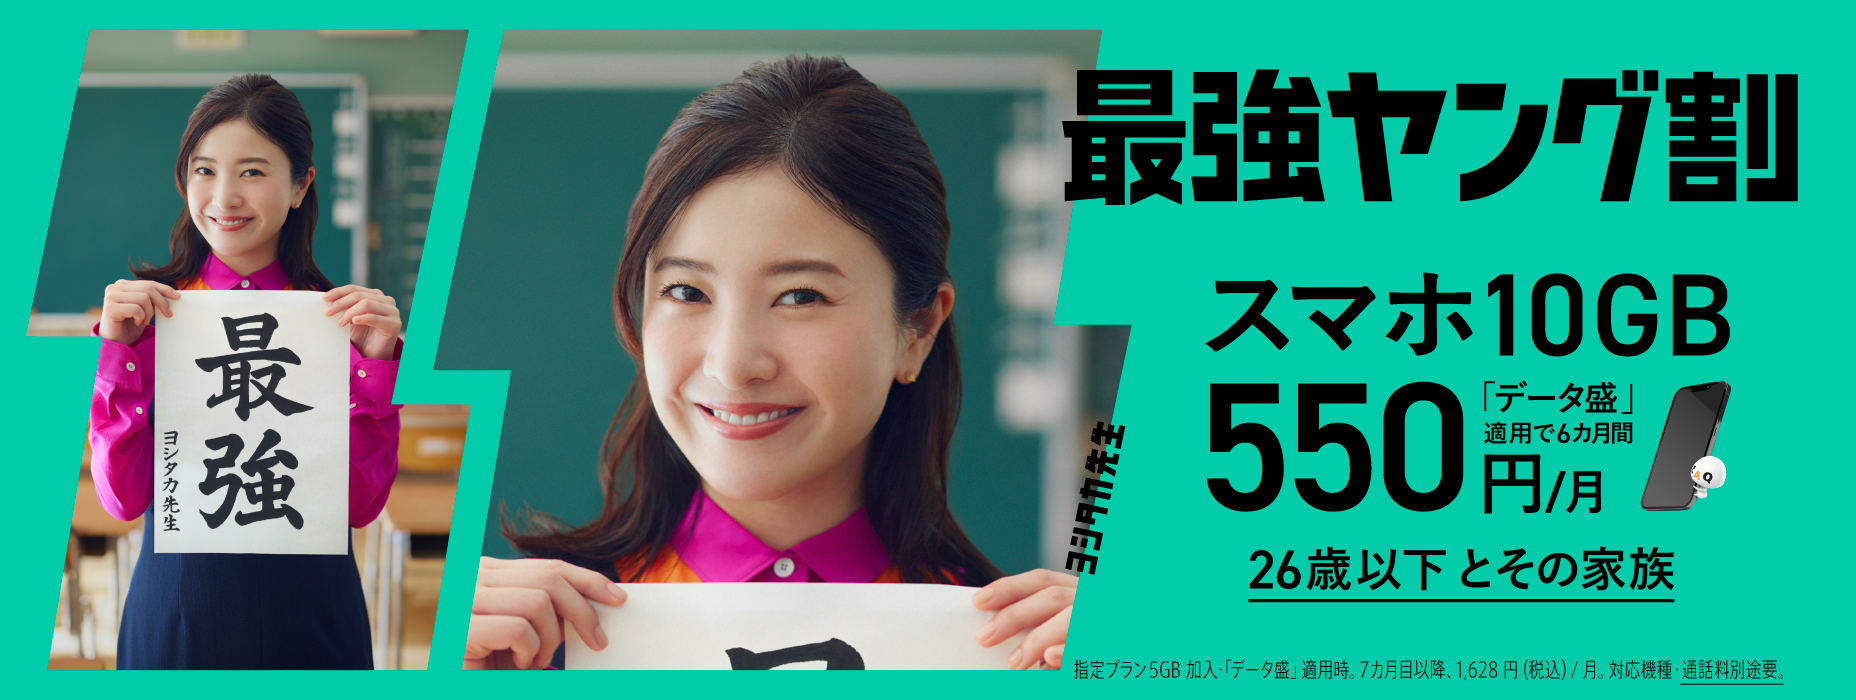 Strongest Young Discount Smartphone 10GB 550 ienes/mês por 6 meses com proteção de dados para menores de 26 anos e suas famílias